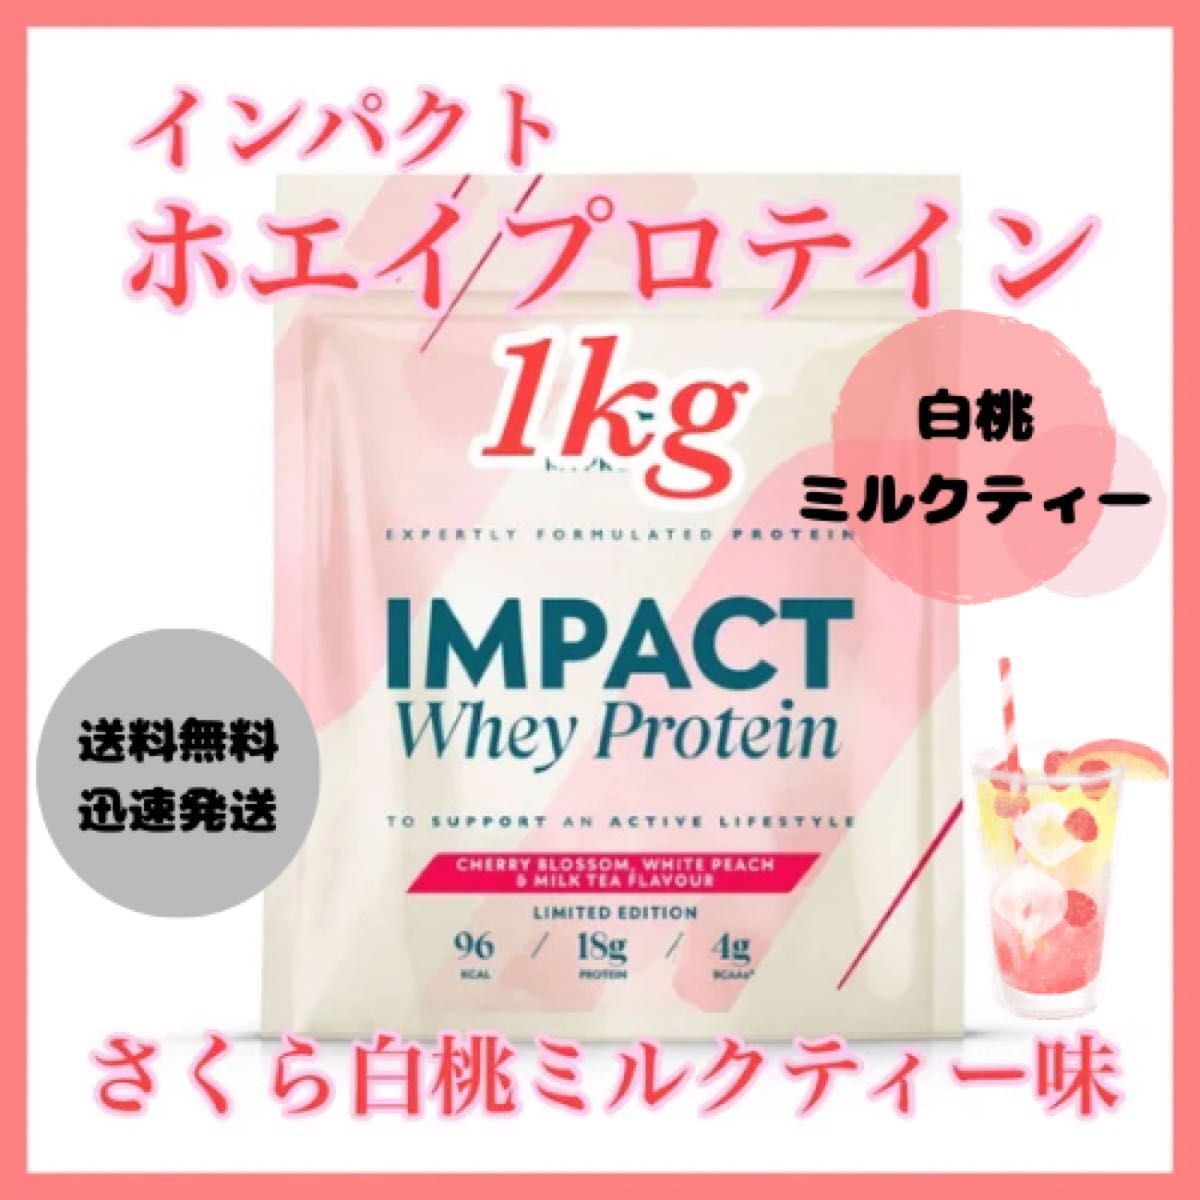  мой протеин cывороточный протеин 1kg 1 kilo * Sakura белый персик чай с молоком тест 